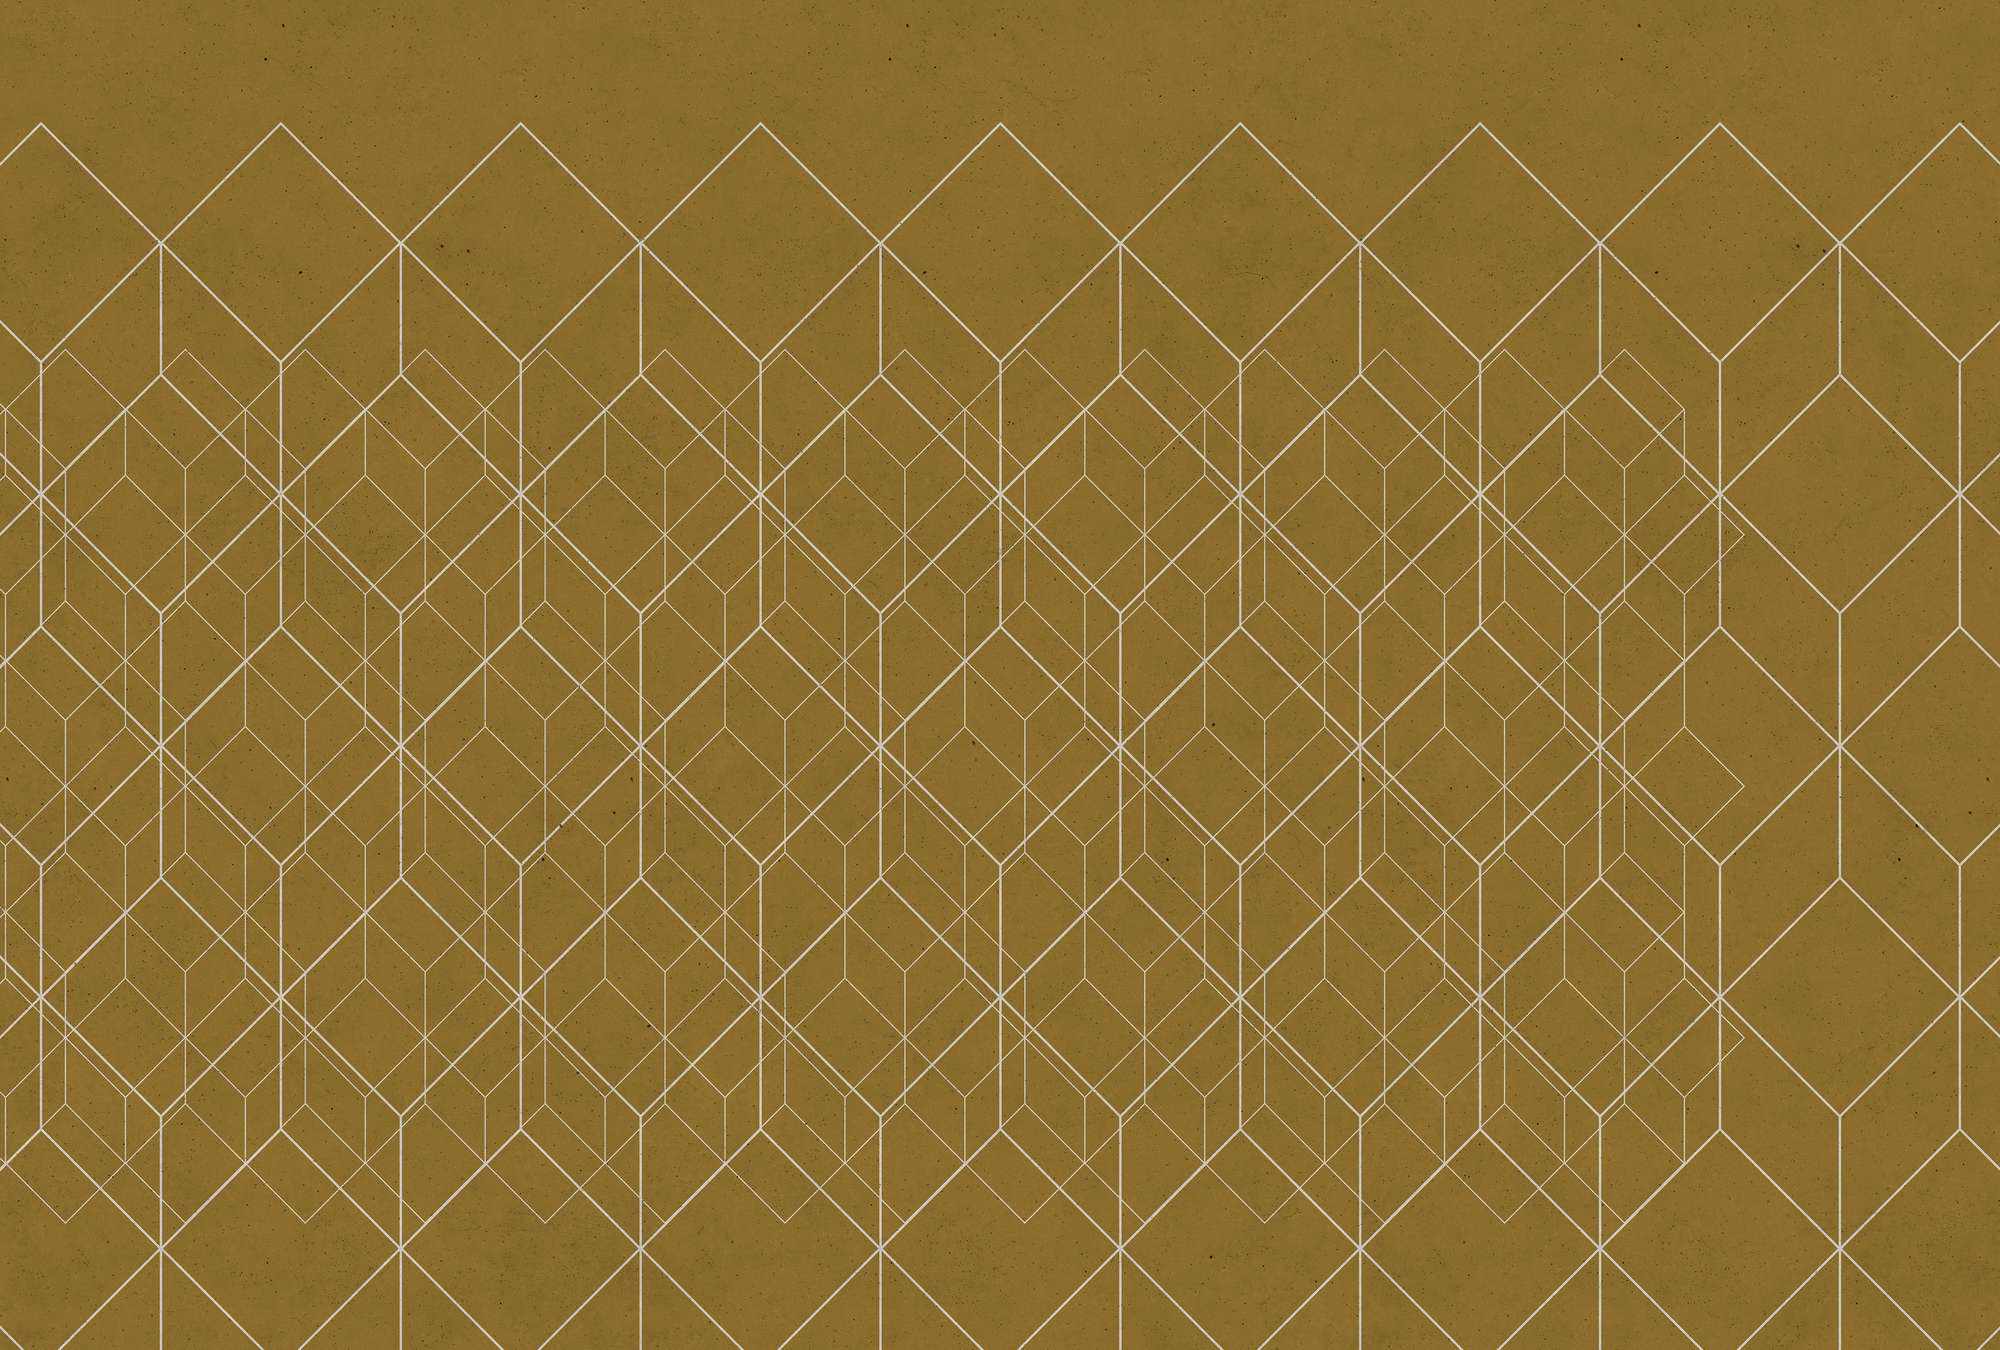             Papier peint motif géométrique - Walls by Patel
        